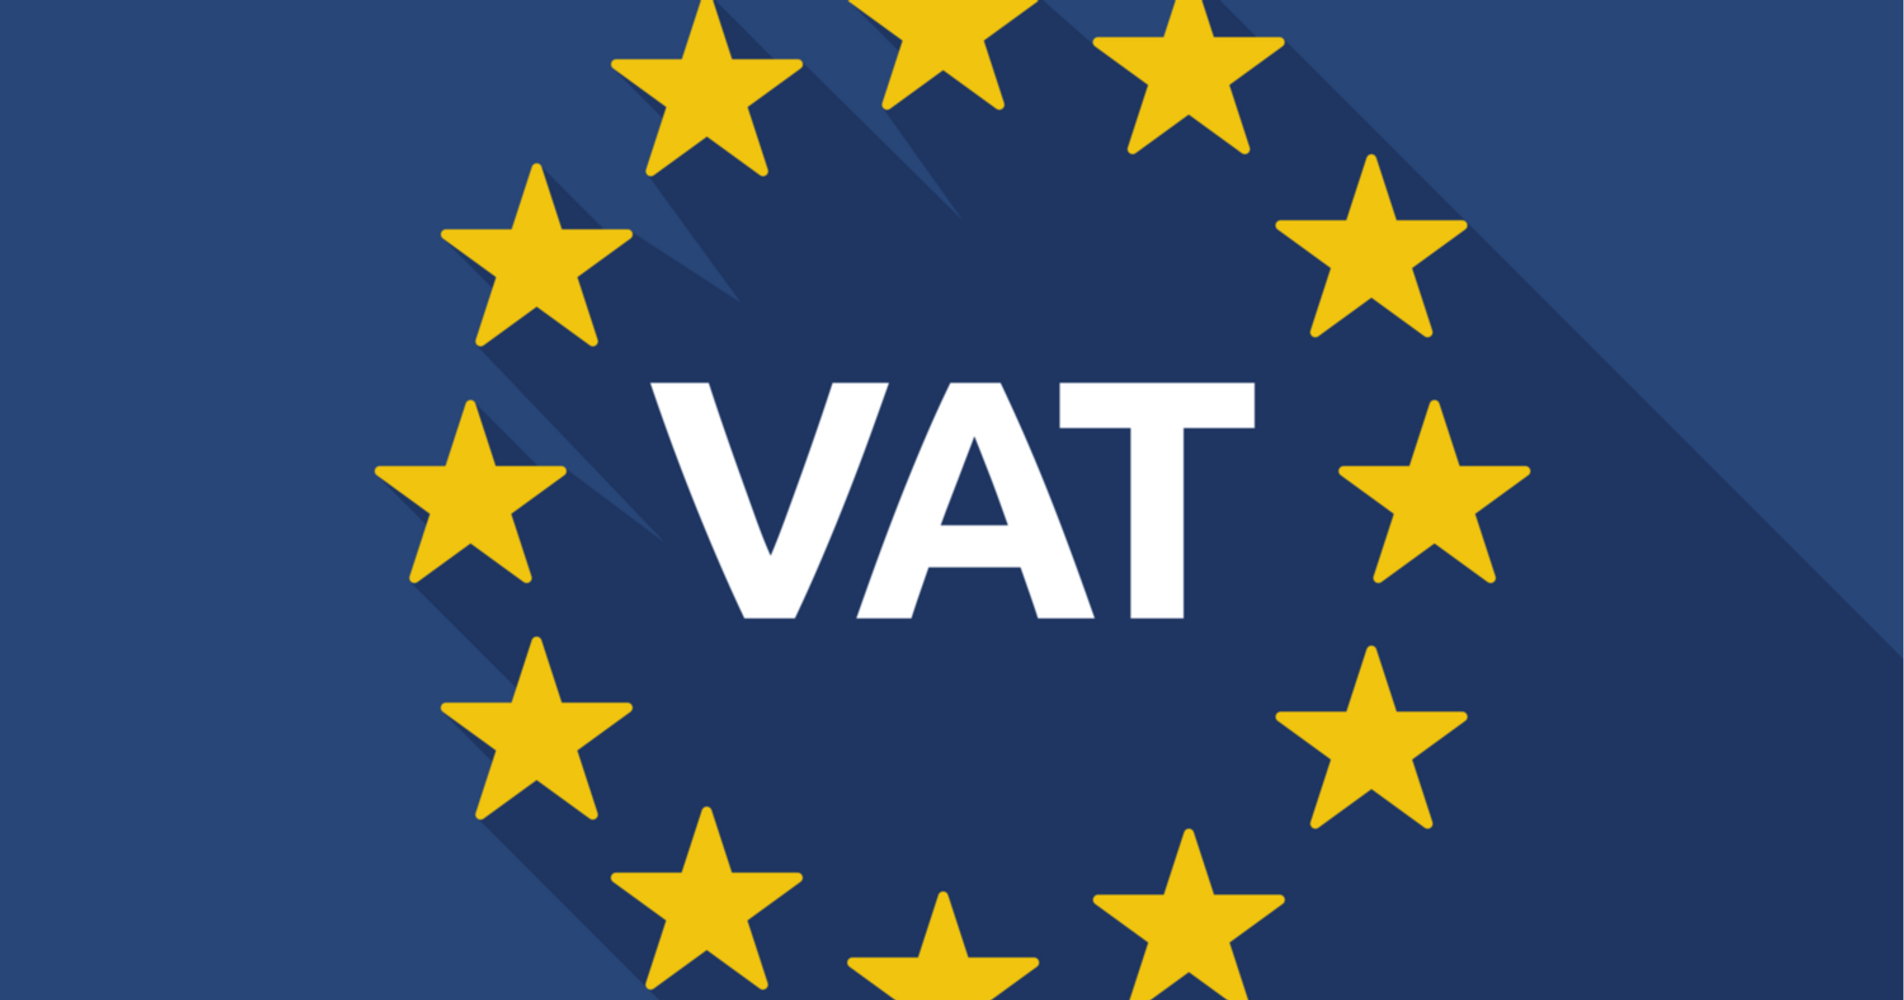 VAT logo in Europe Flag